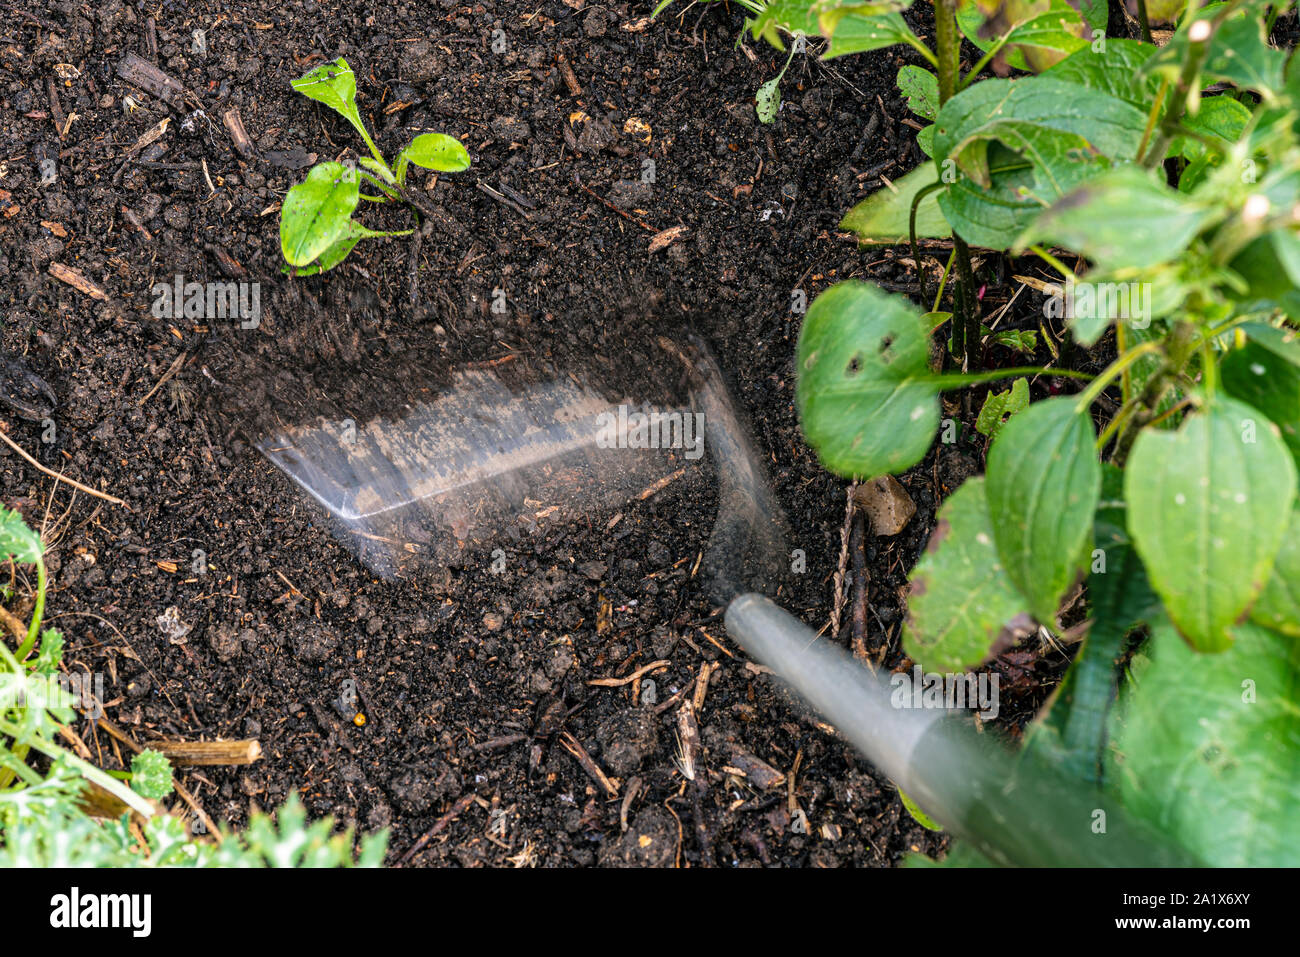 Cavar para eliminar las malas hierbas. Extracción de malezas con una azada de jardín. Foto de stock